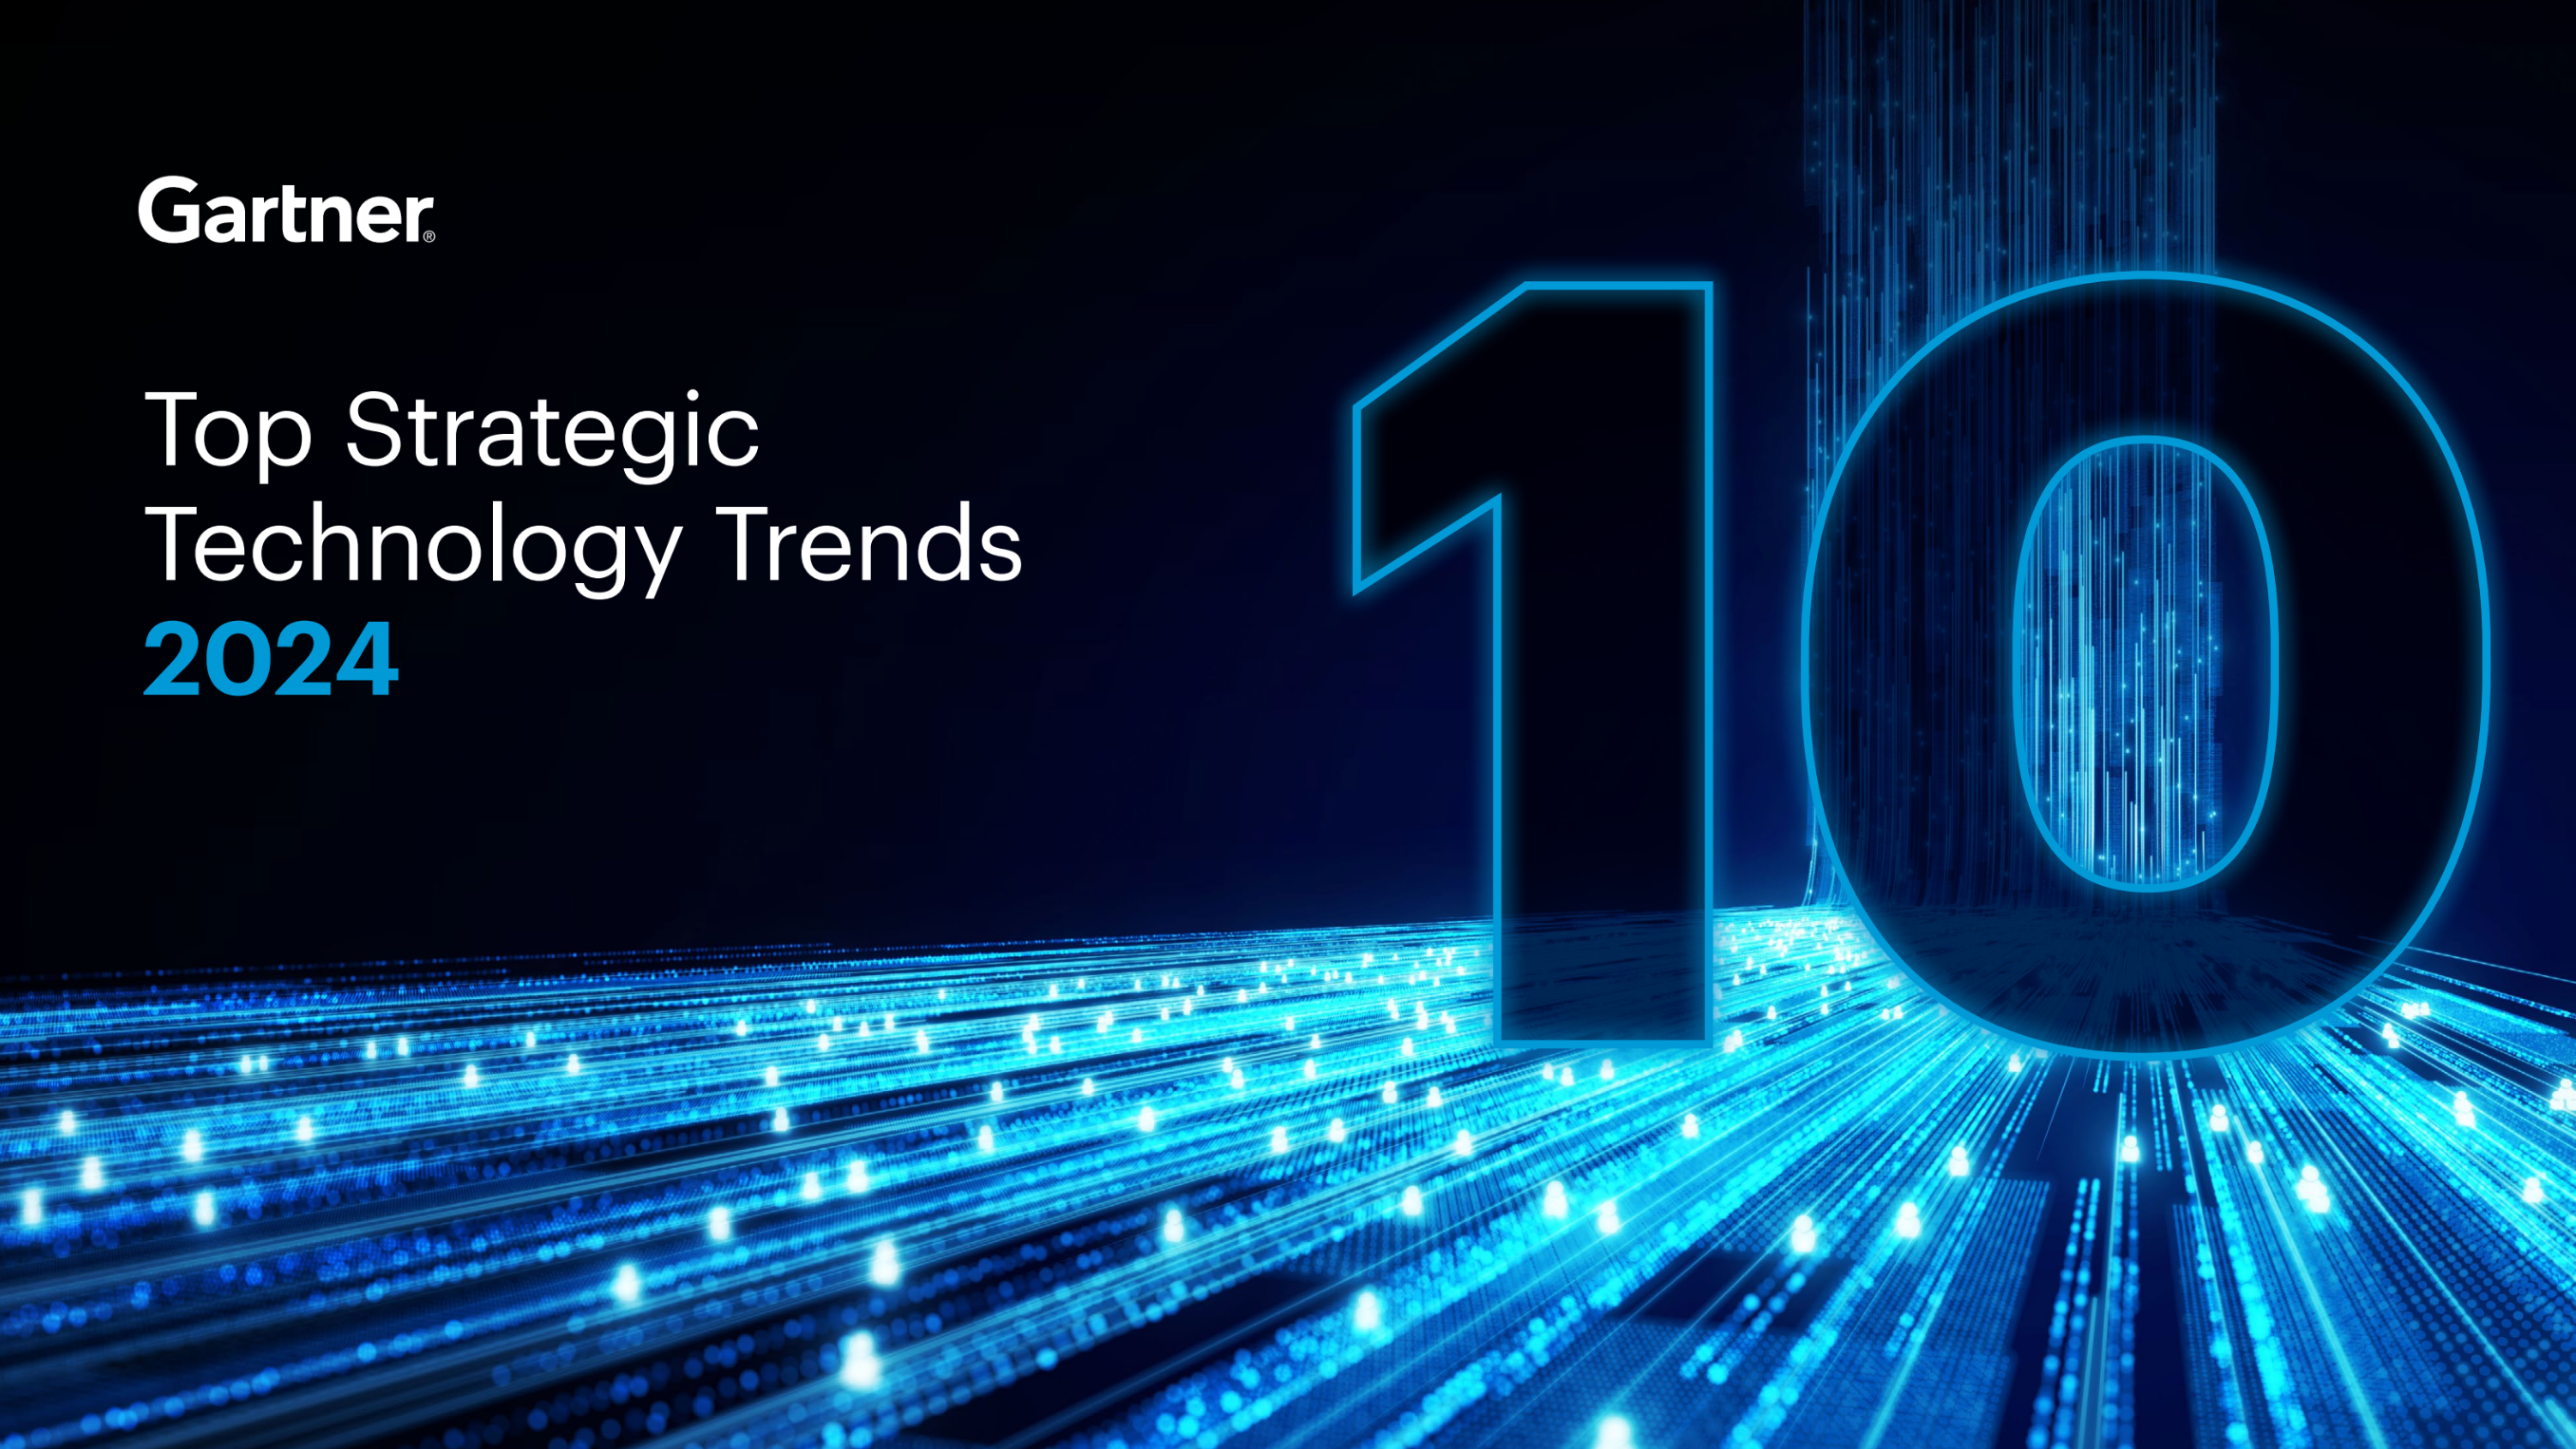 Gartner Top Strategic Technology Trends 2024